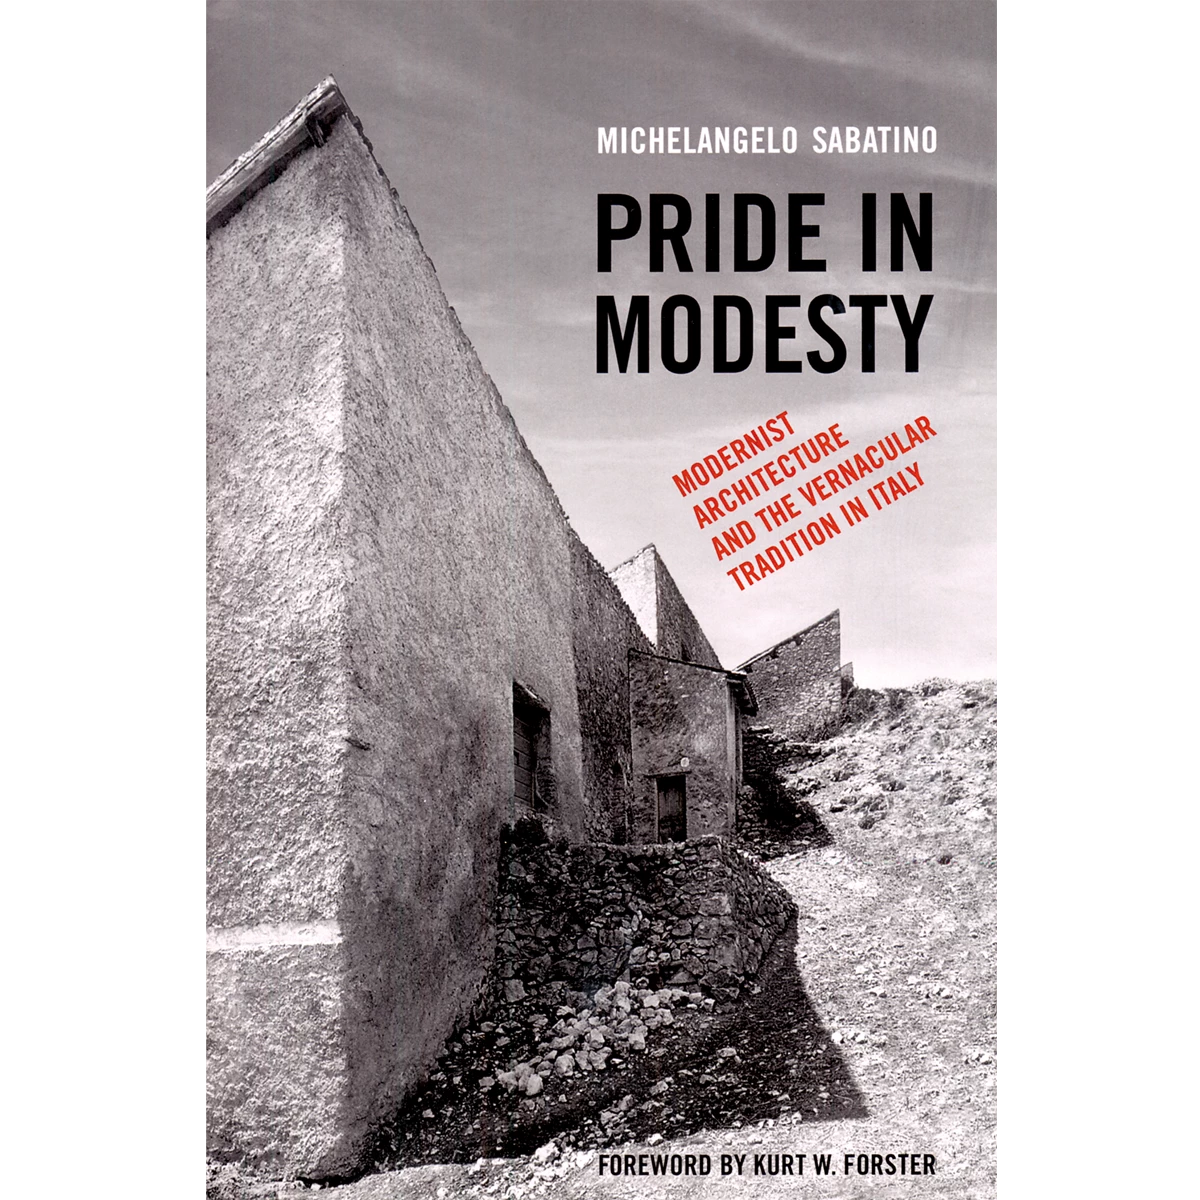 Pride in Modesty